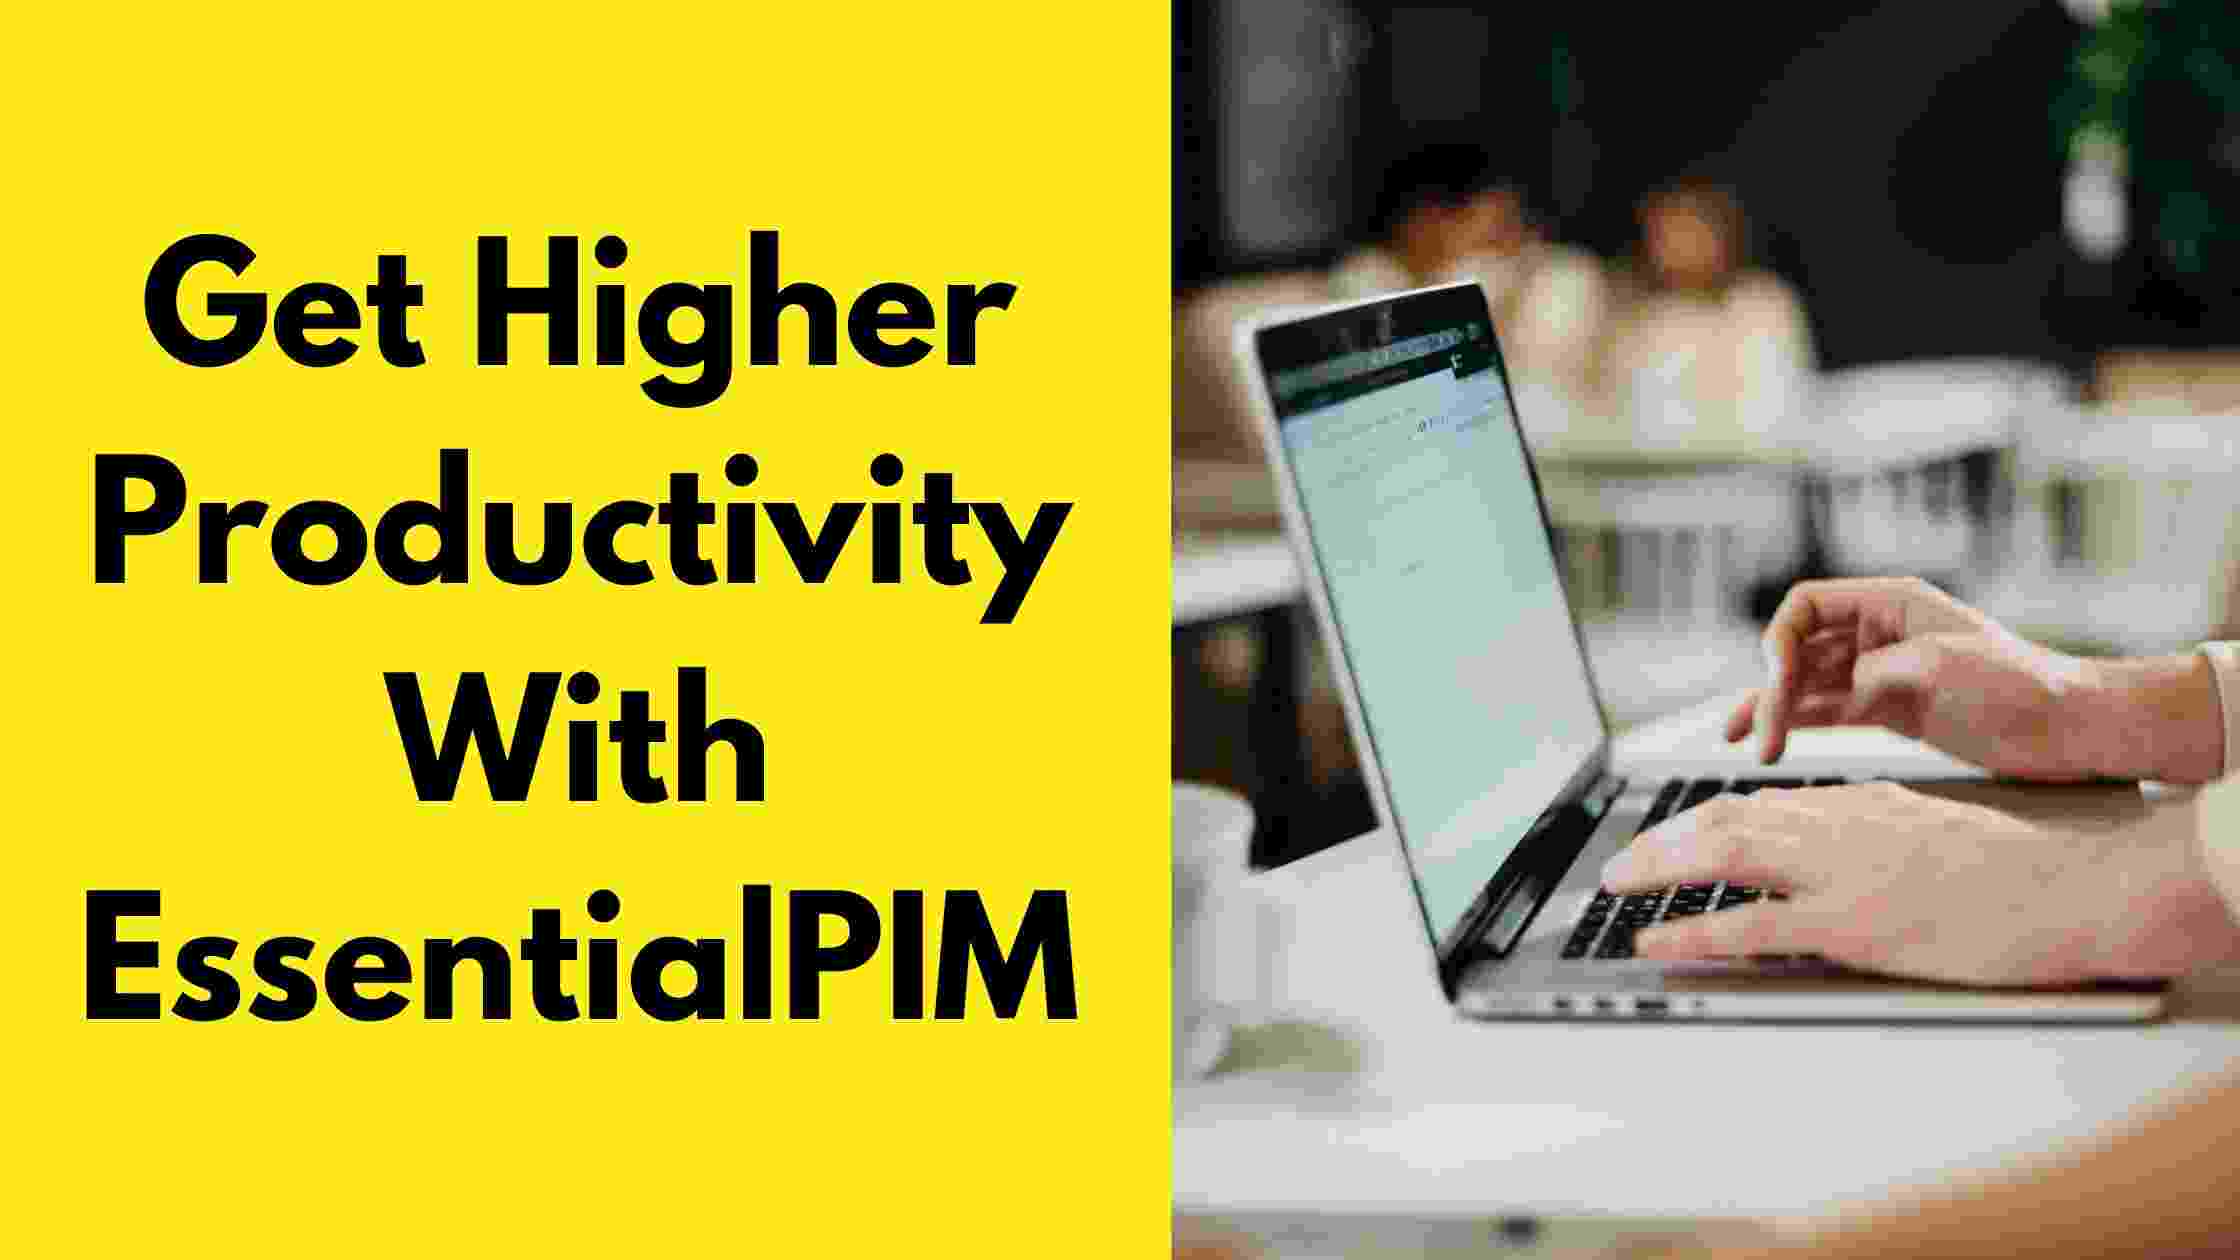 Get Higher Productivity With EssentialPIM